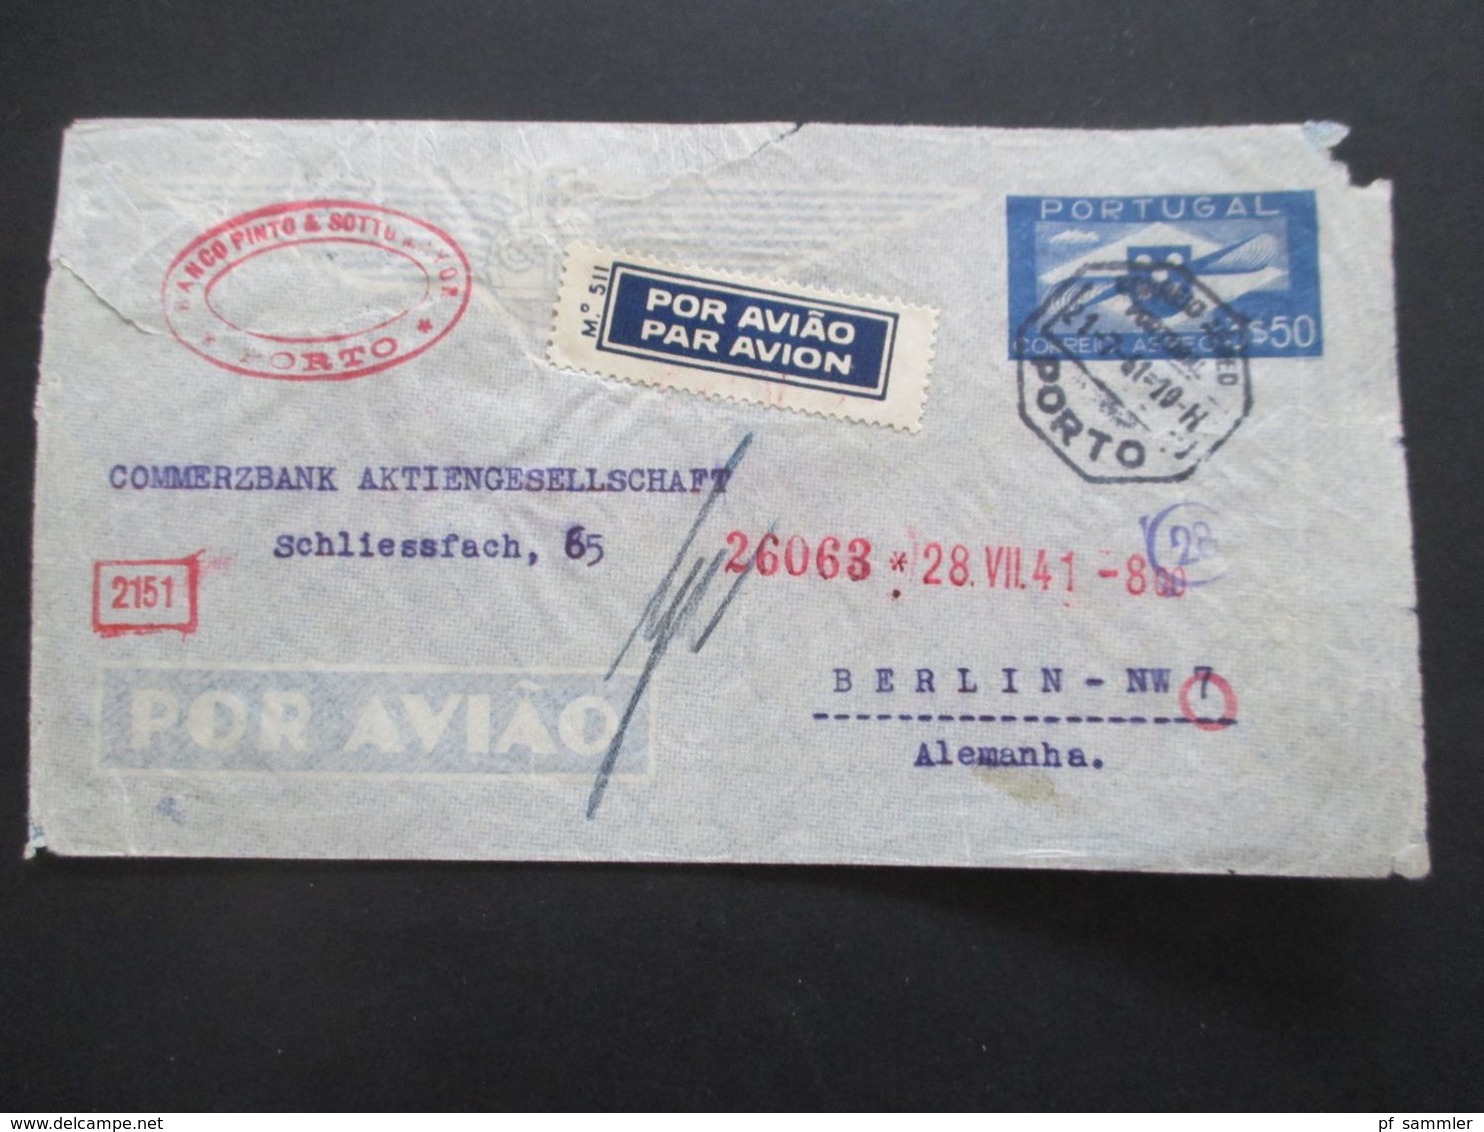 Portugal 1941 Luftpostumschlag LU 1 Porto - Berlin Mit OkW Zensur / Mehrfachzensur / OKW Geöffnet Und Roter Nr. Stempel - Covers & Documents